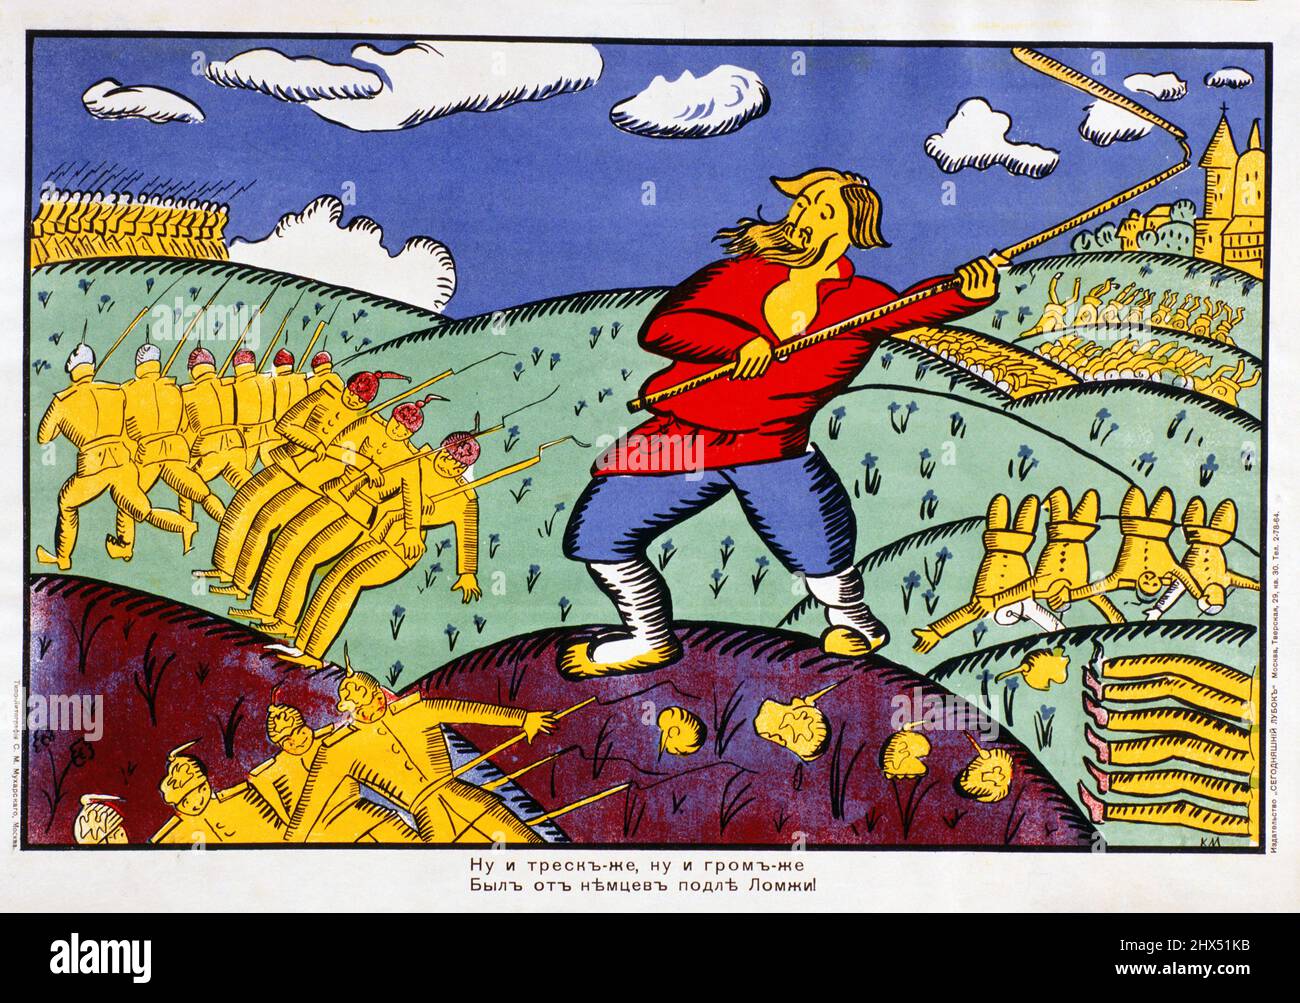 Qu'est-ce que Crackle, quel tonnerre - cette affiche de propagande de la première Guerre mondiale de Kazimir Malevich fait référence à une bataille près de Lomza (aujourd'hui Pologne), 1914 Banque D'Images